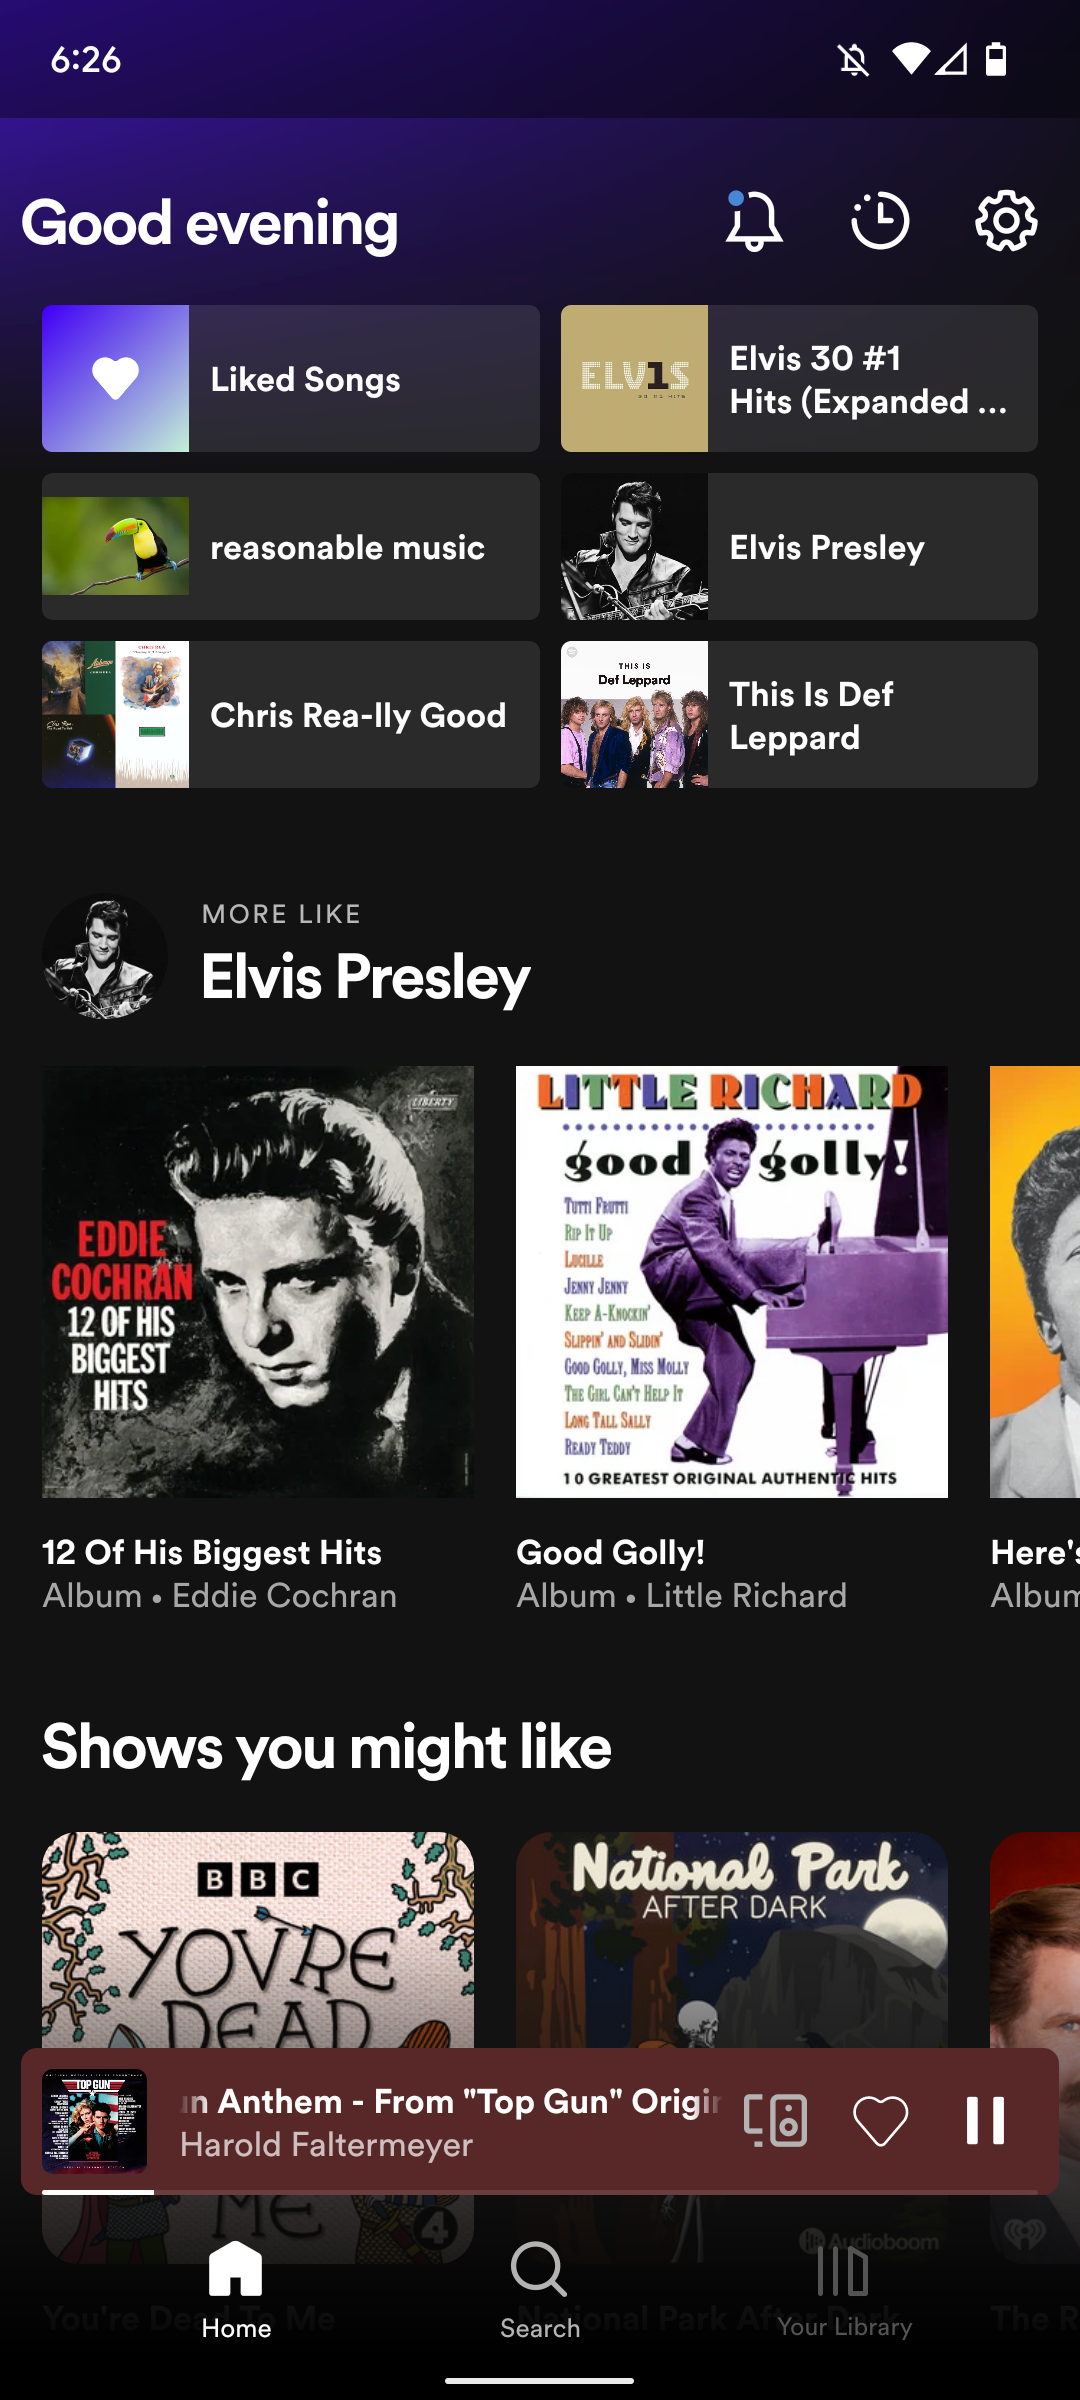 Captura de tela da tela inicial do Spotify